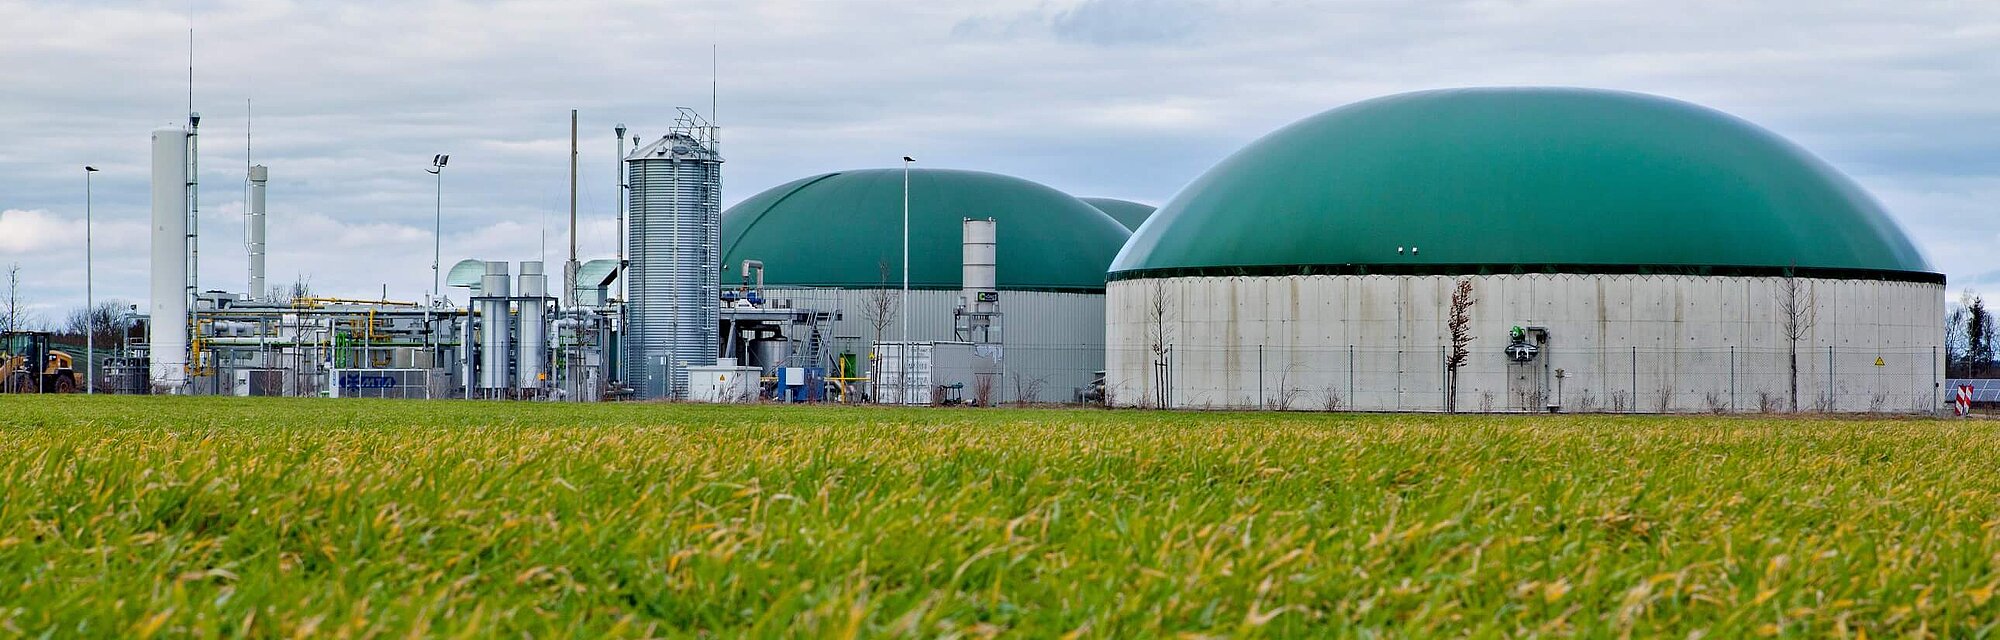 Absicherung von Biogas-, Abwasserbehandlungs- und Deponiegastechnik